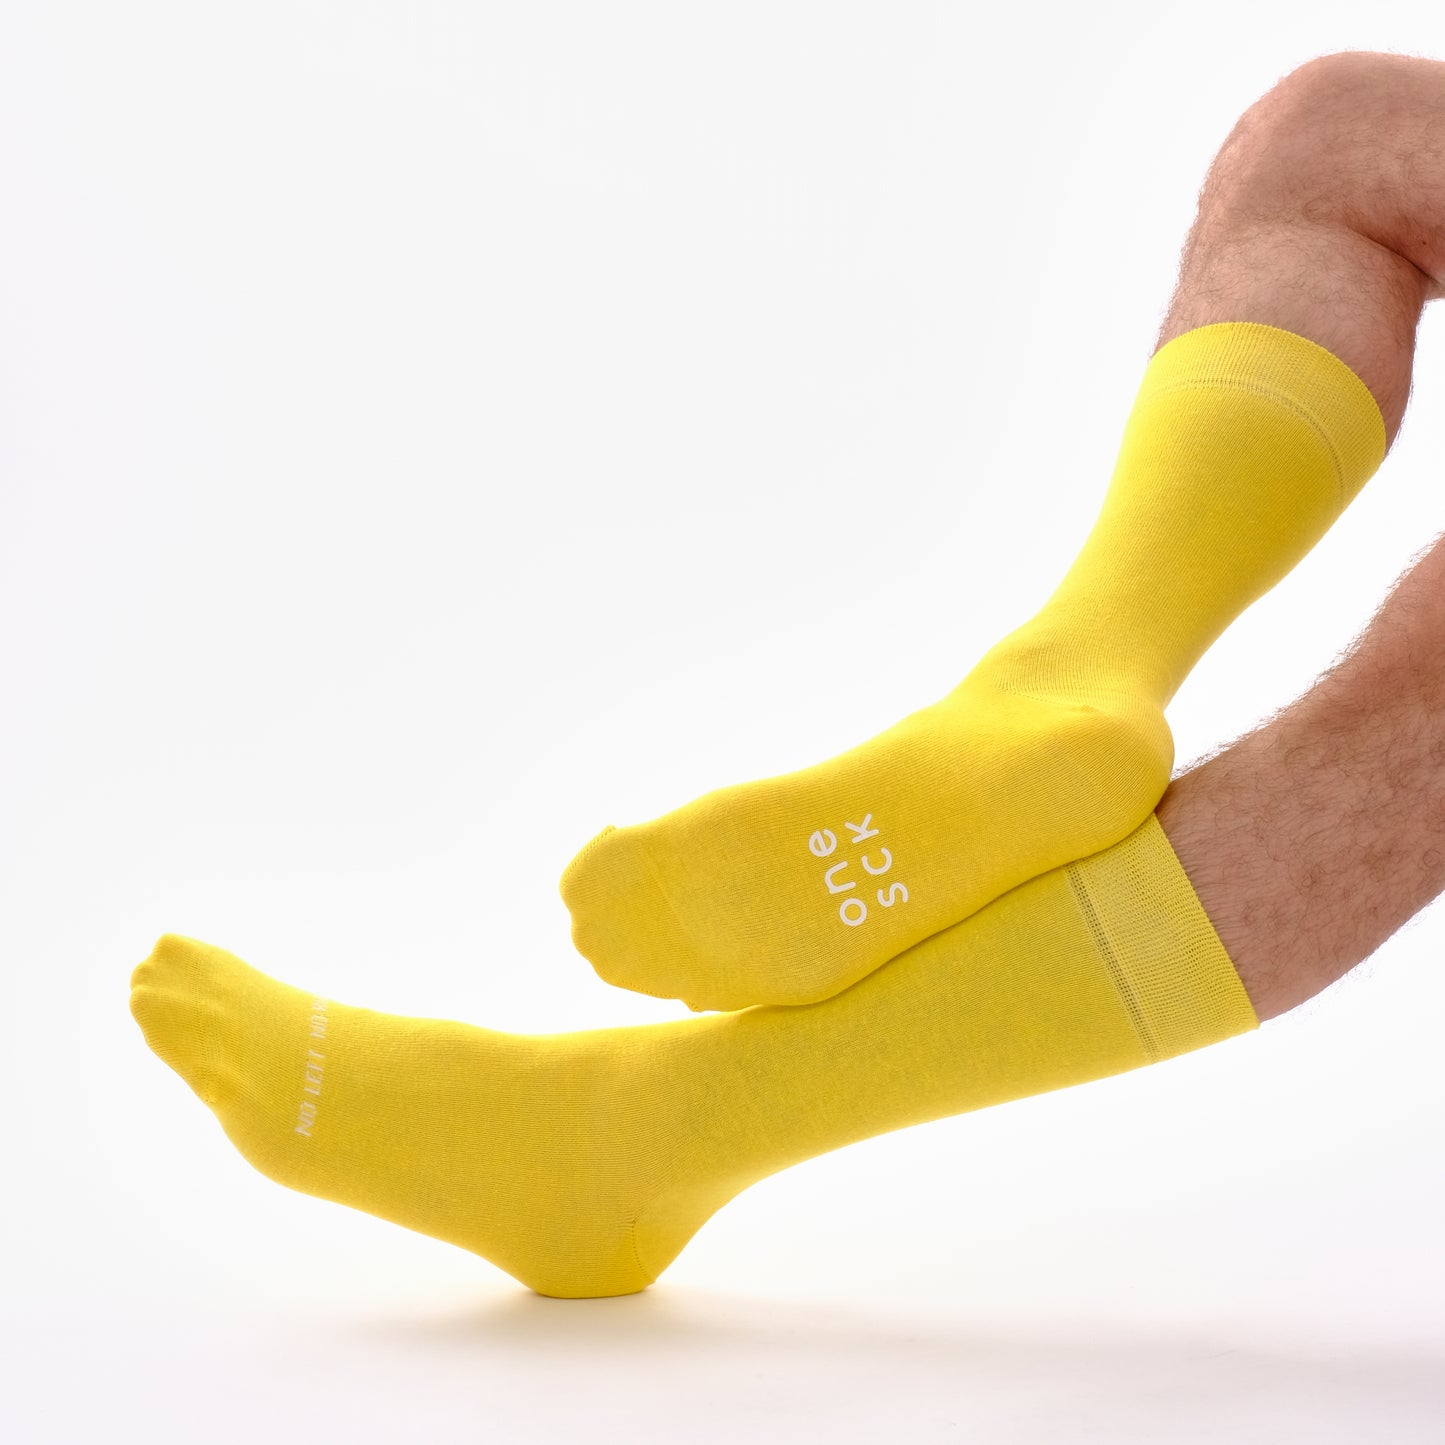 Twin Yellow Socks